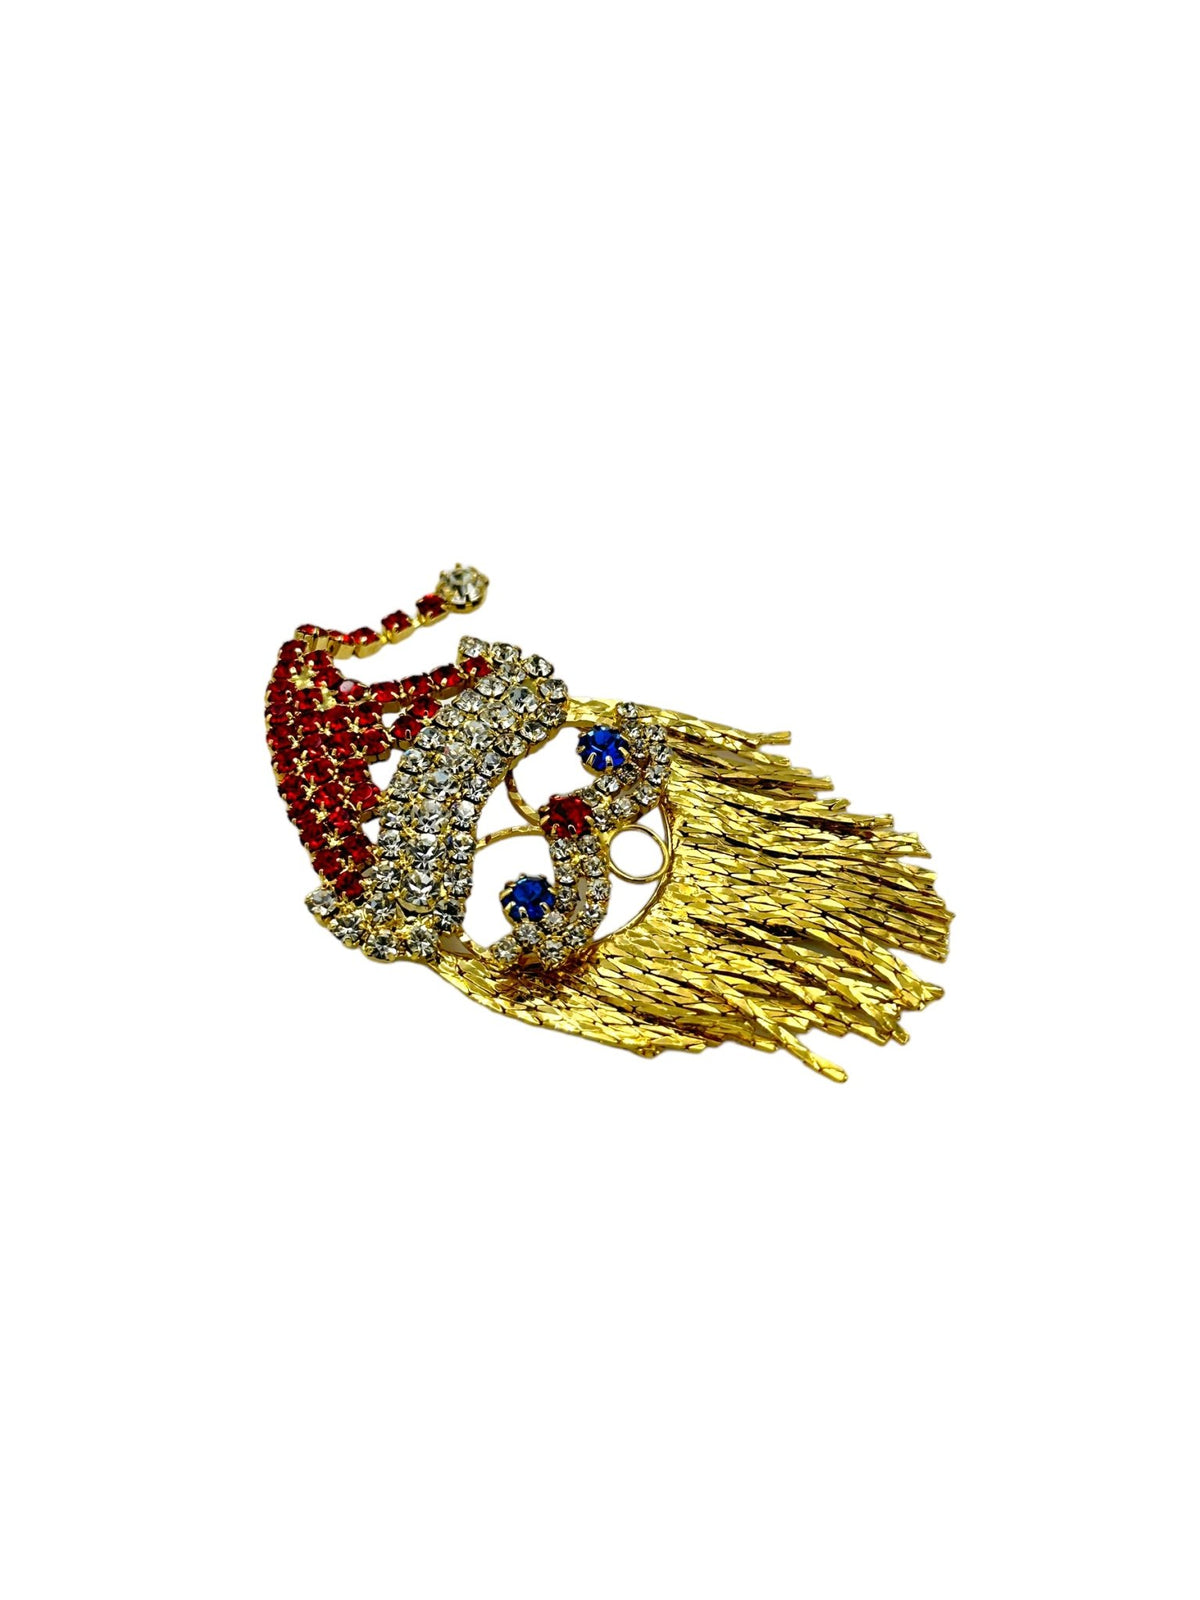 Vintage Rhinestone Santa Claus Brooch Brooch - 24 Wishes Vintage Jewelry